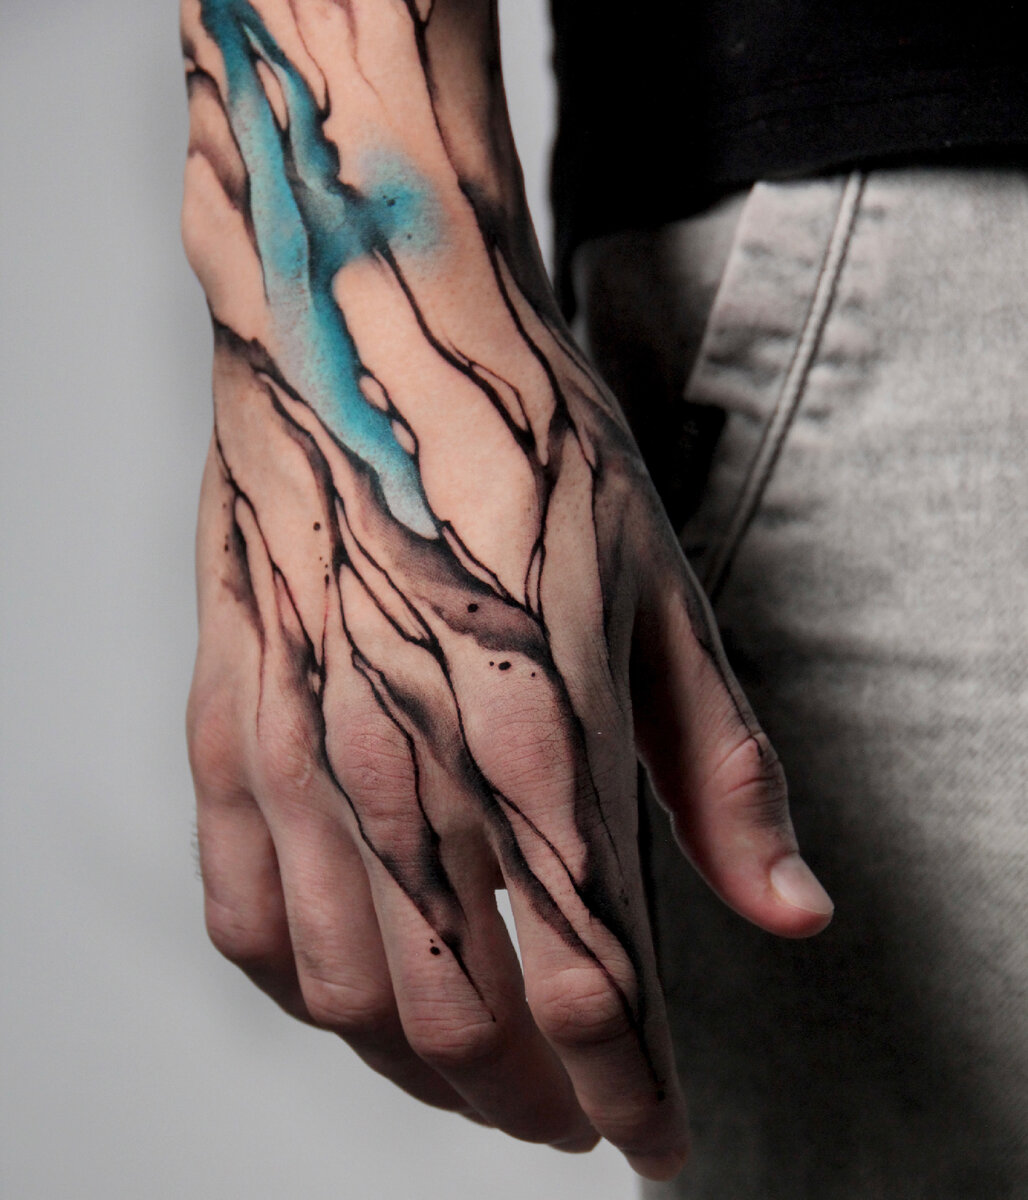 Карта боли: самые болезненные места для татуировок 🫣 | KOKOSSTUDIO тату/пирсинг/лазер | Дзен